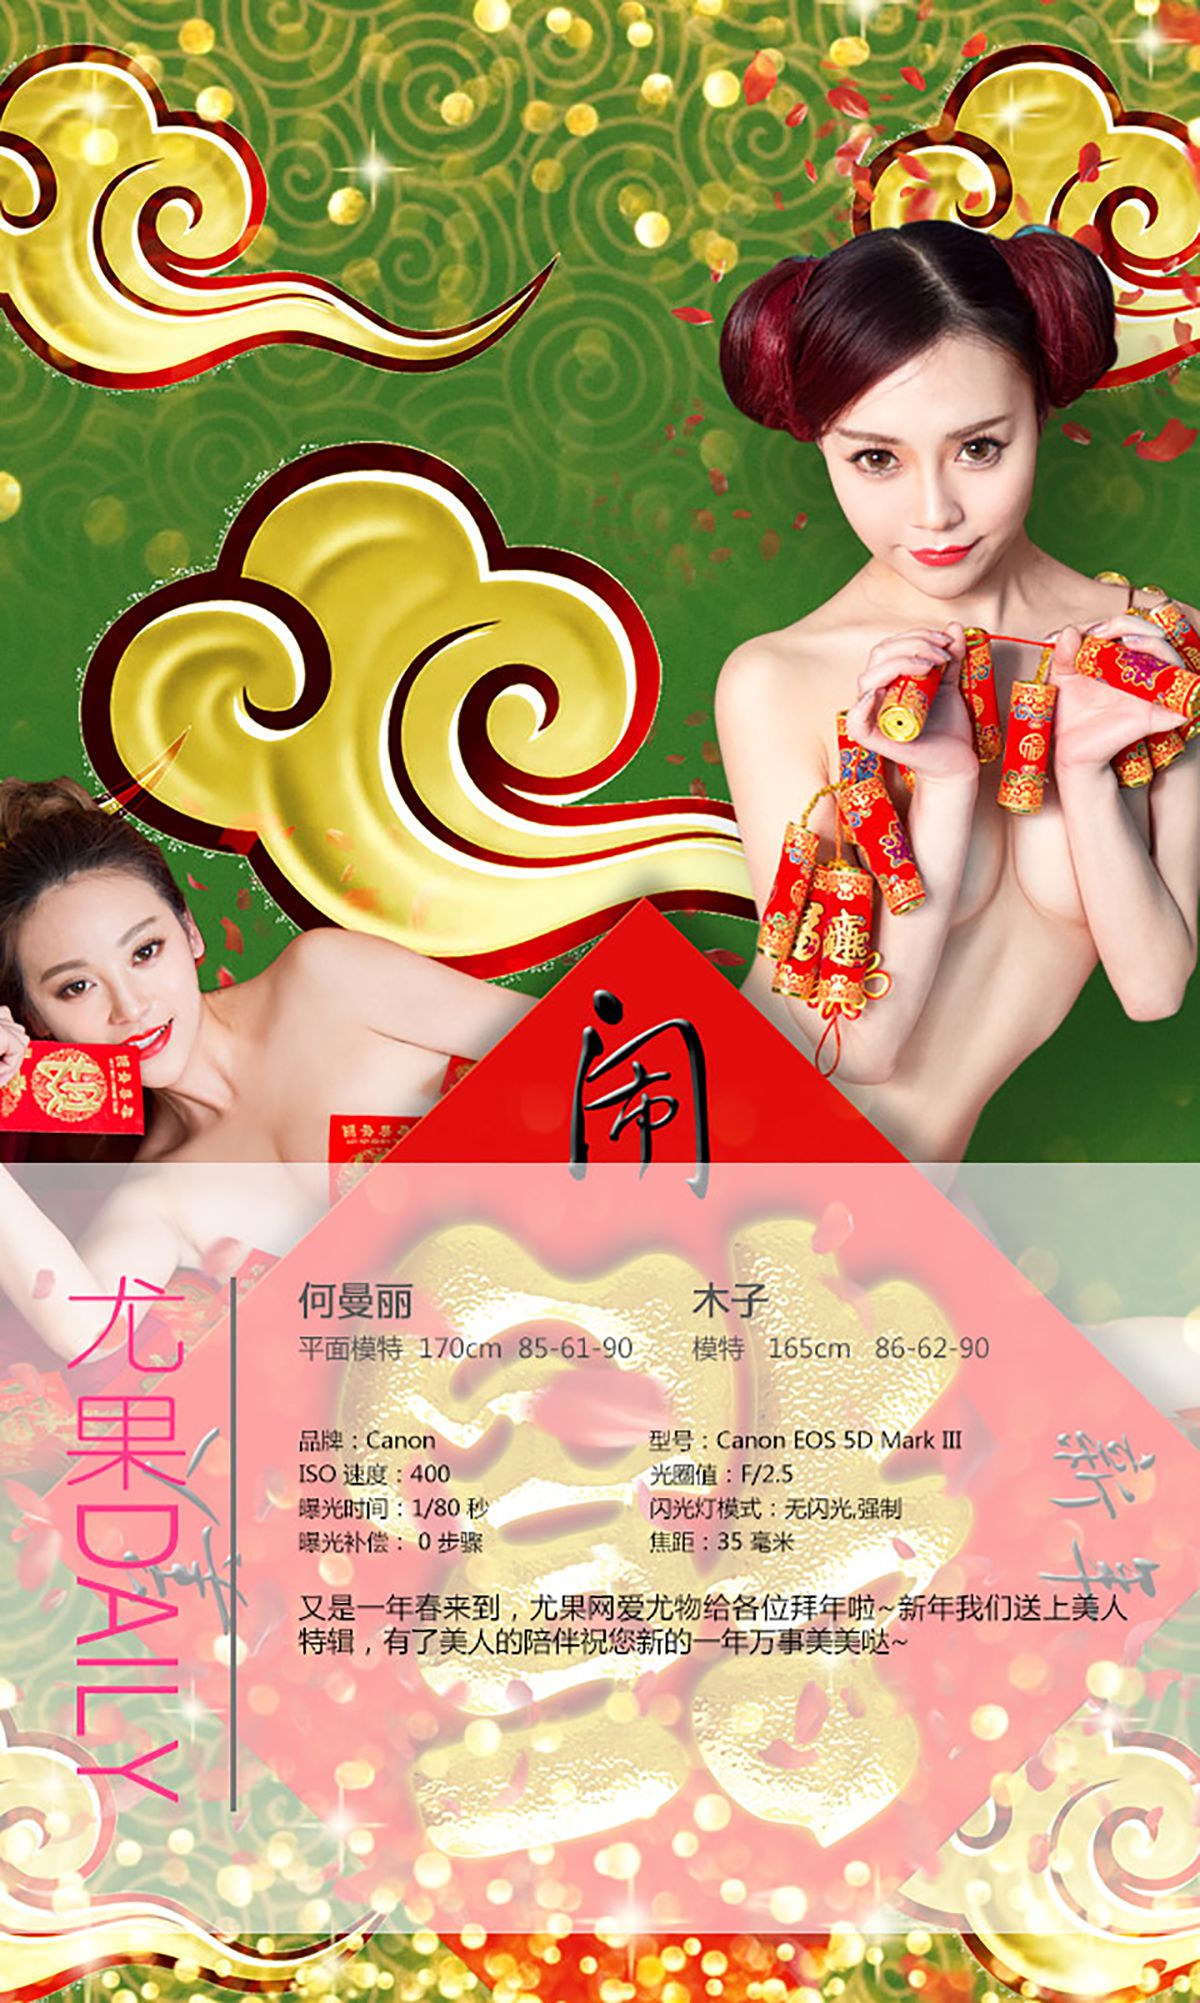 He Manli & Zhang Xin & Muzi “New Year Special” [爱尤物Ugirls] No.265 Photo Album